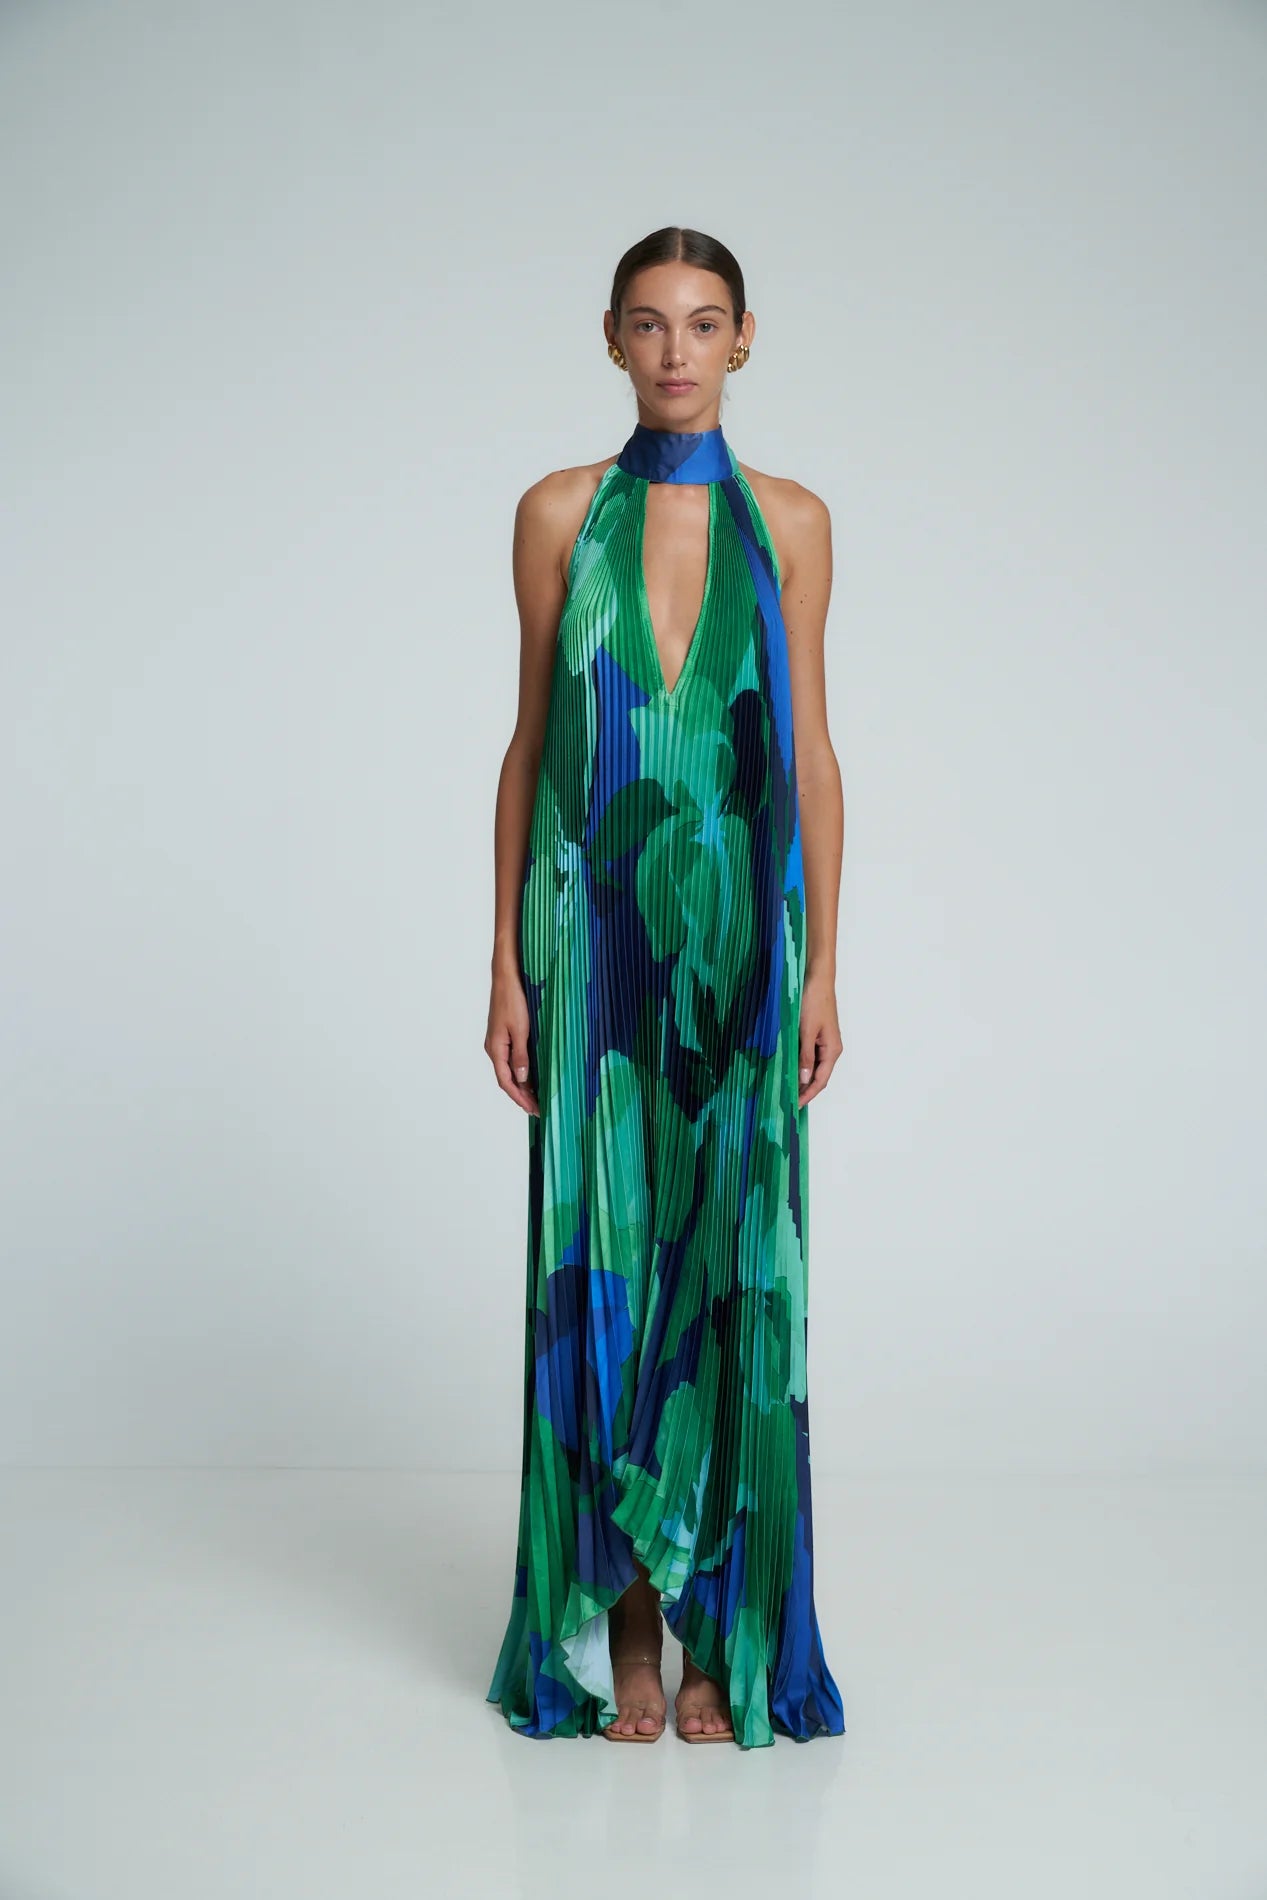 L'idee Woman - Opera Gown in Capri Green